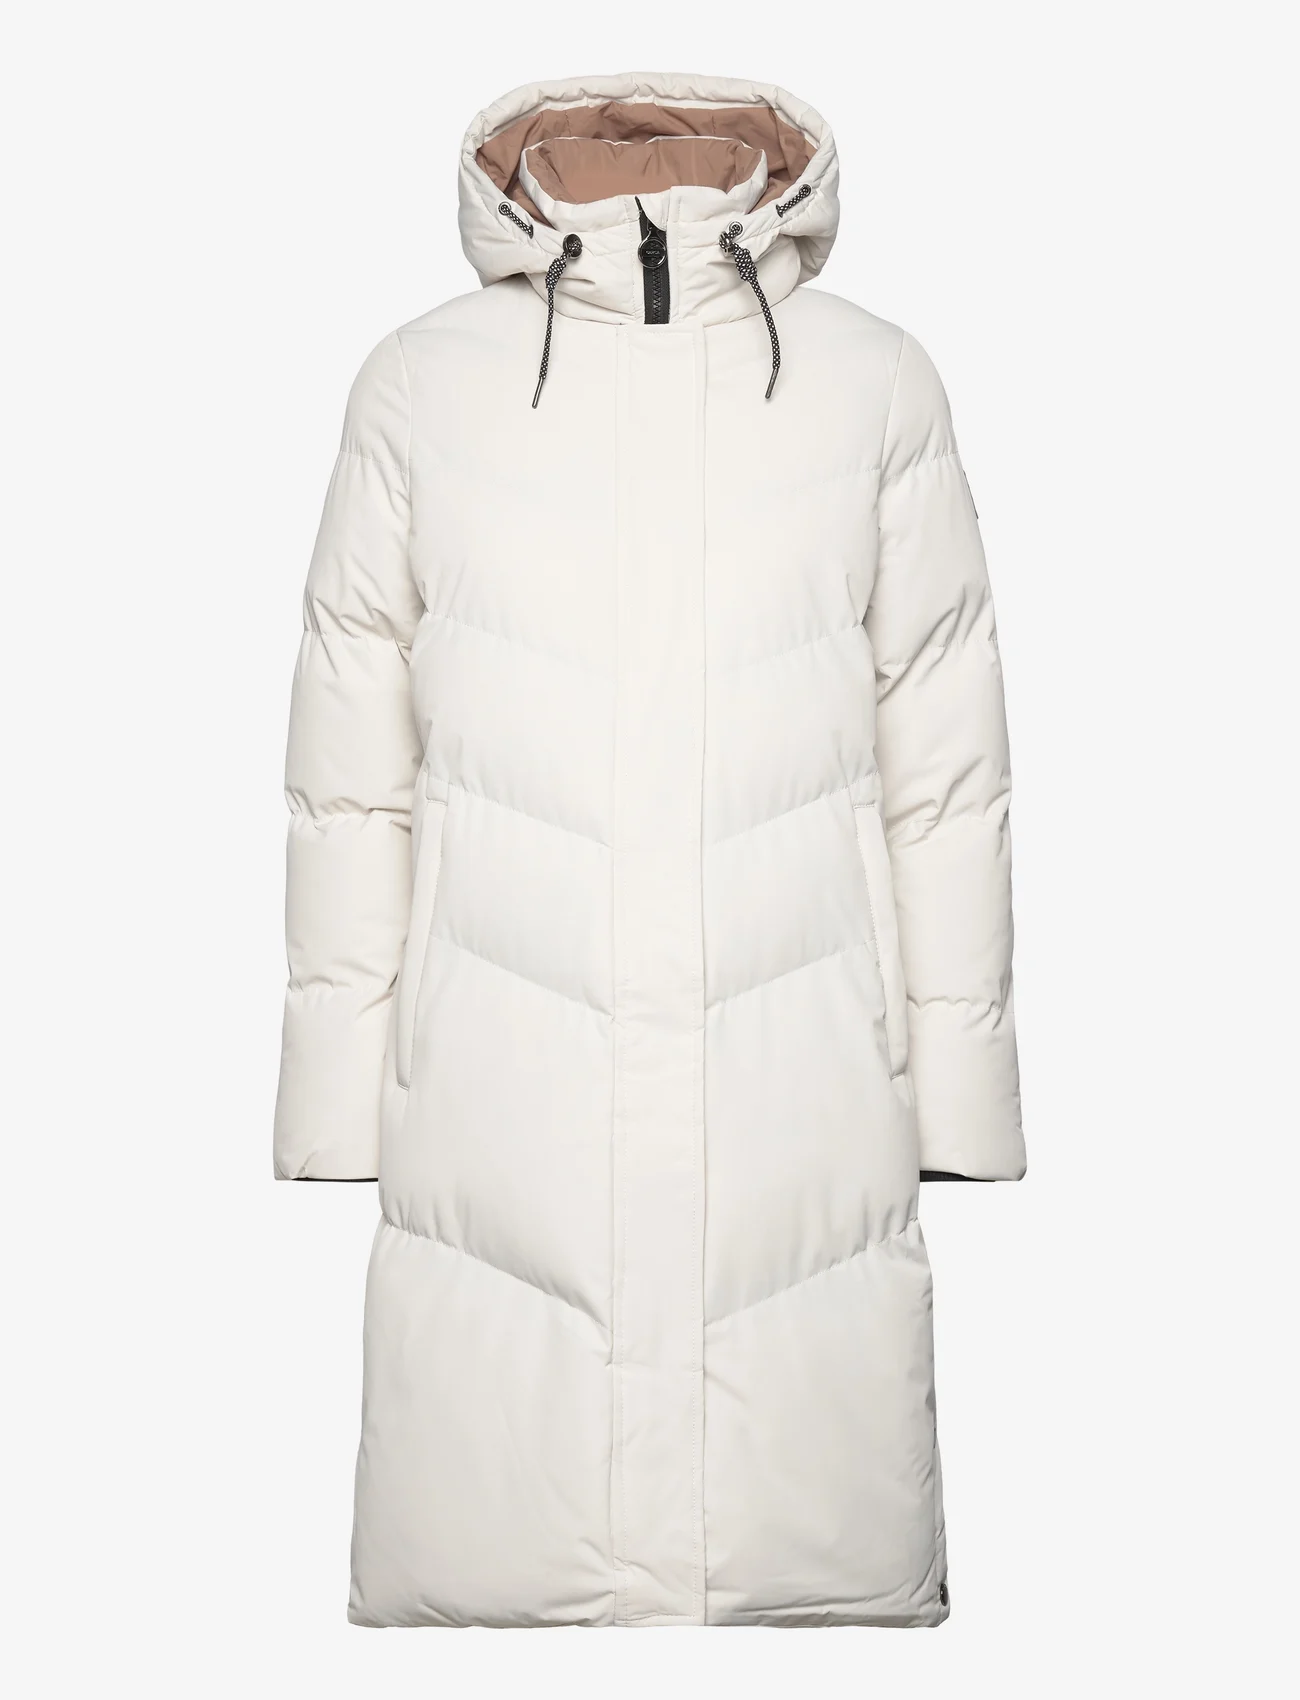 Garcia - ladies outdoor jackets - winterjassen - cream - 0